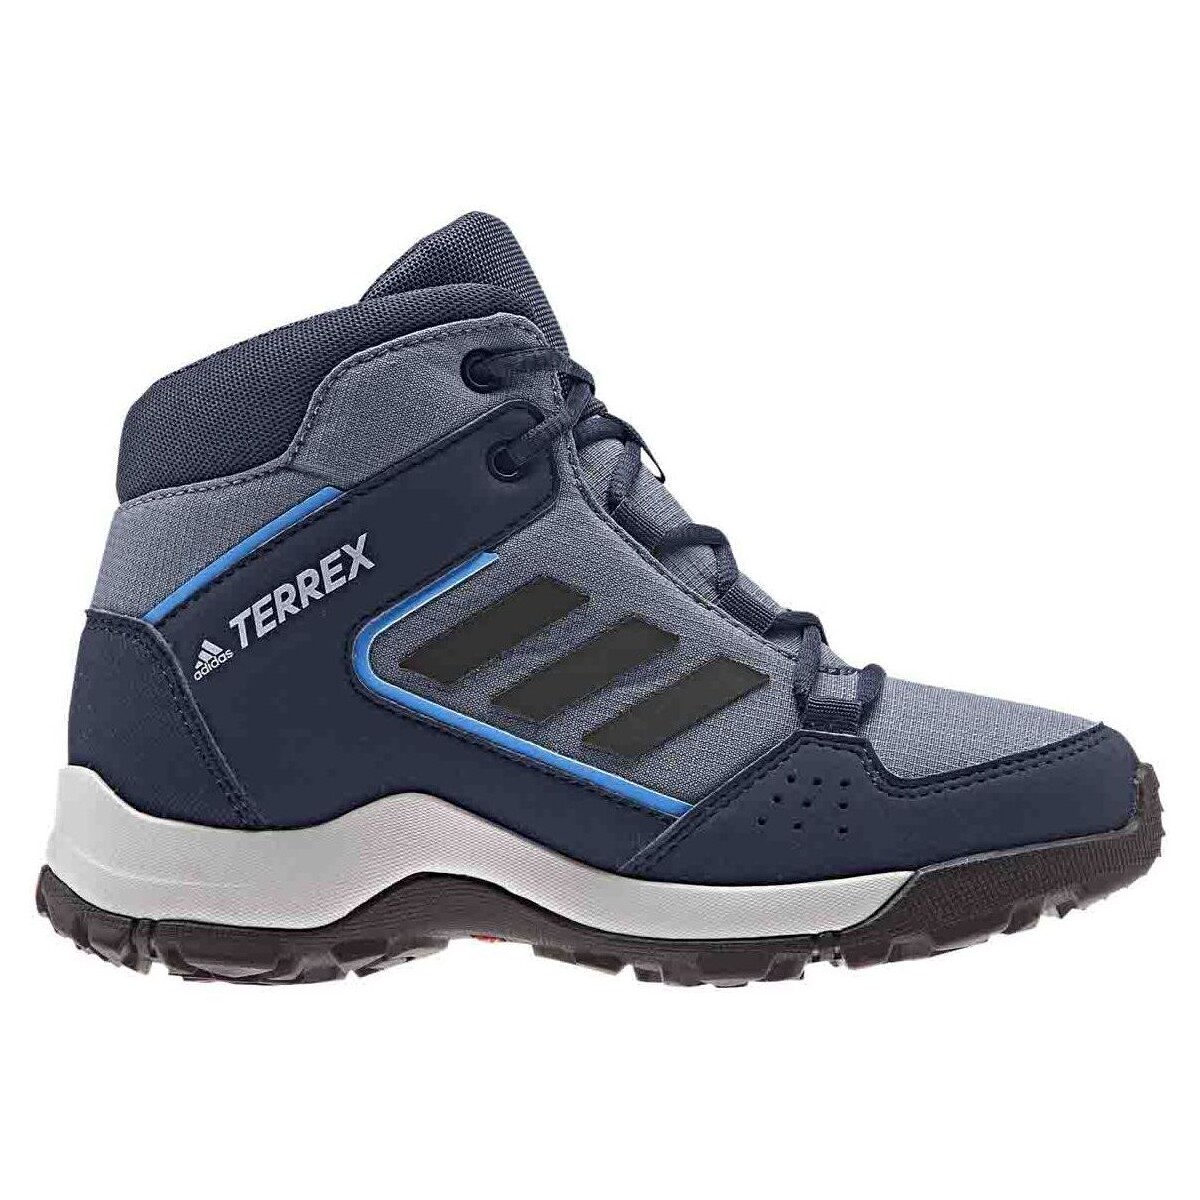 Sapatos Sandálias desportivas adidas Originals G26533 Azul